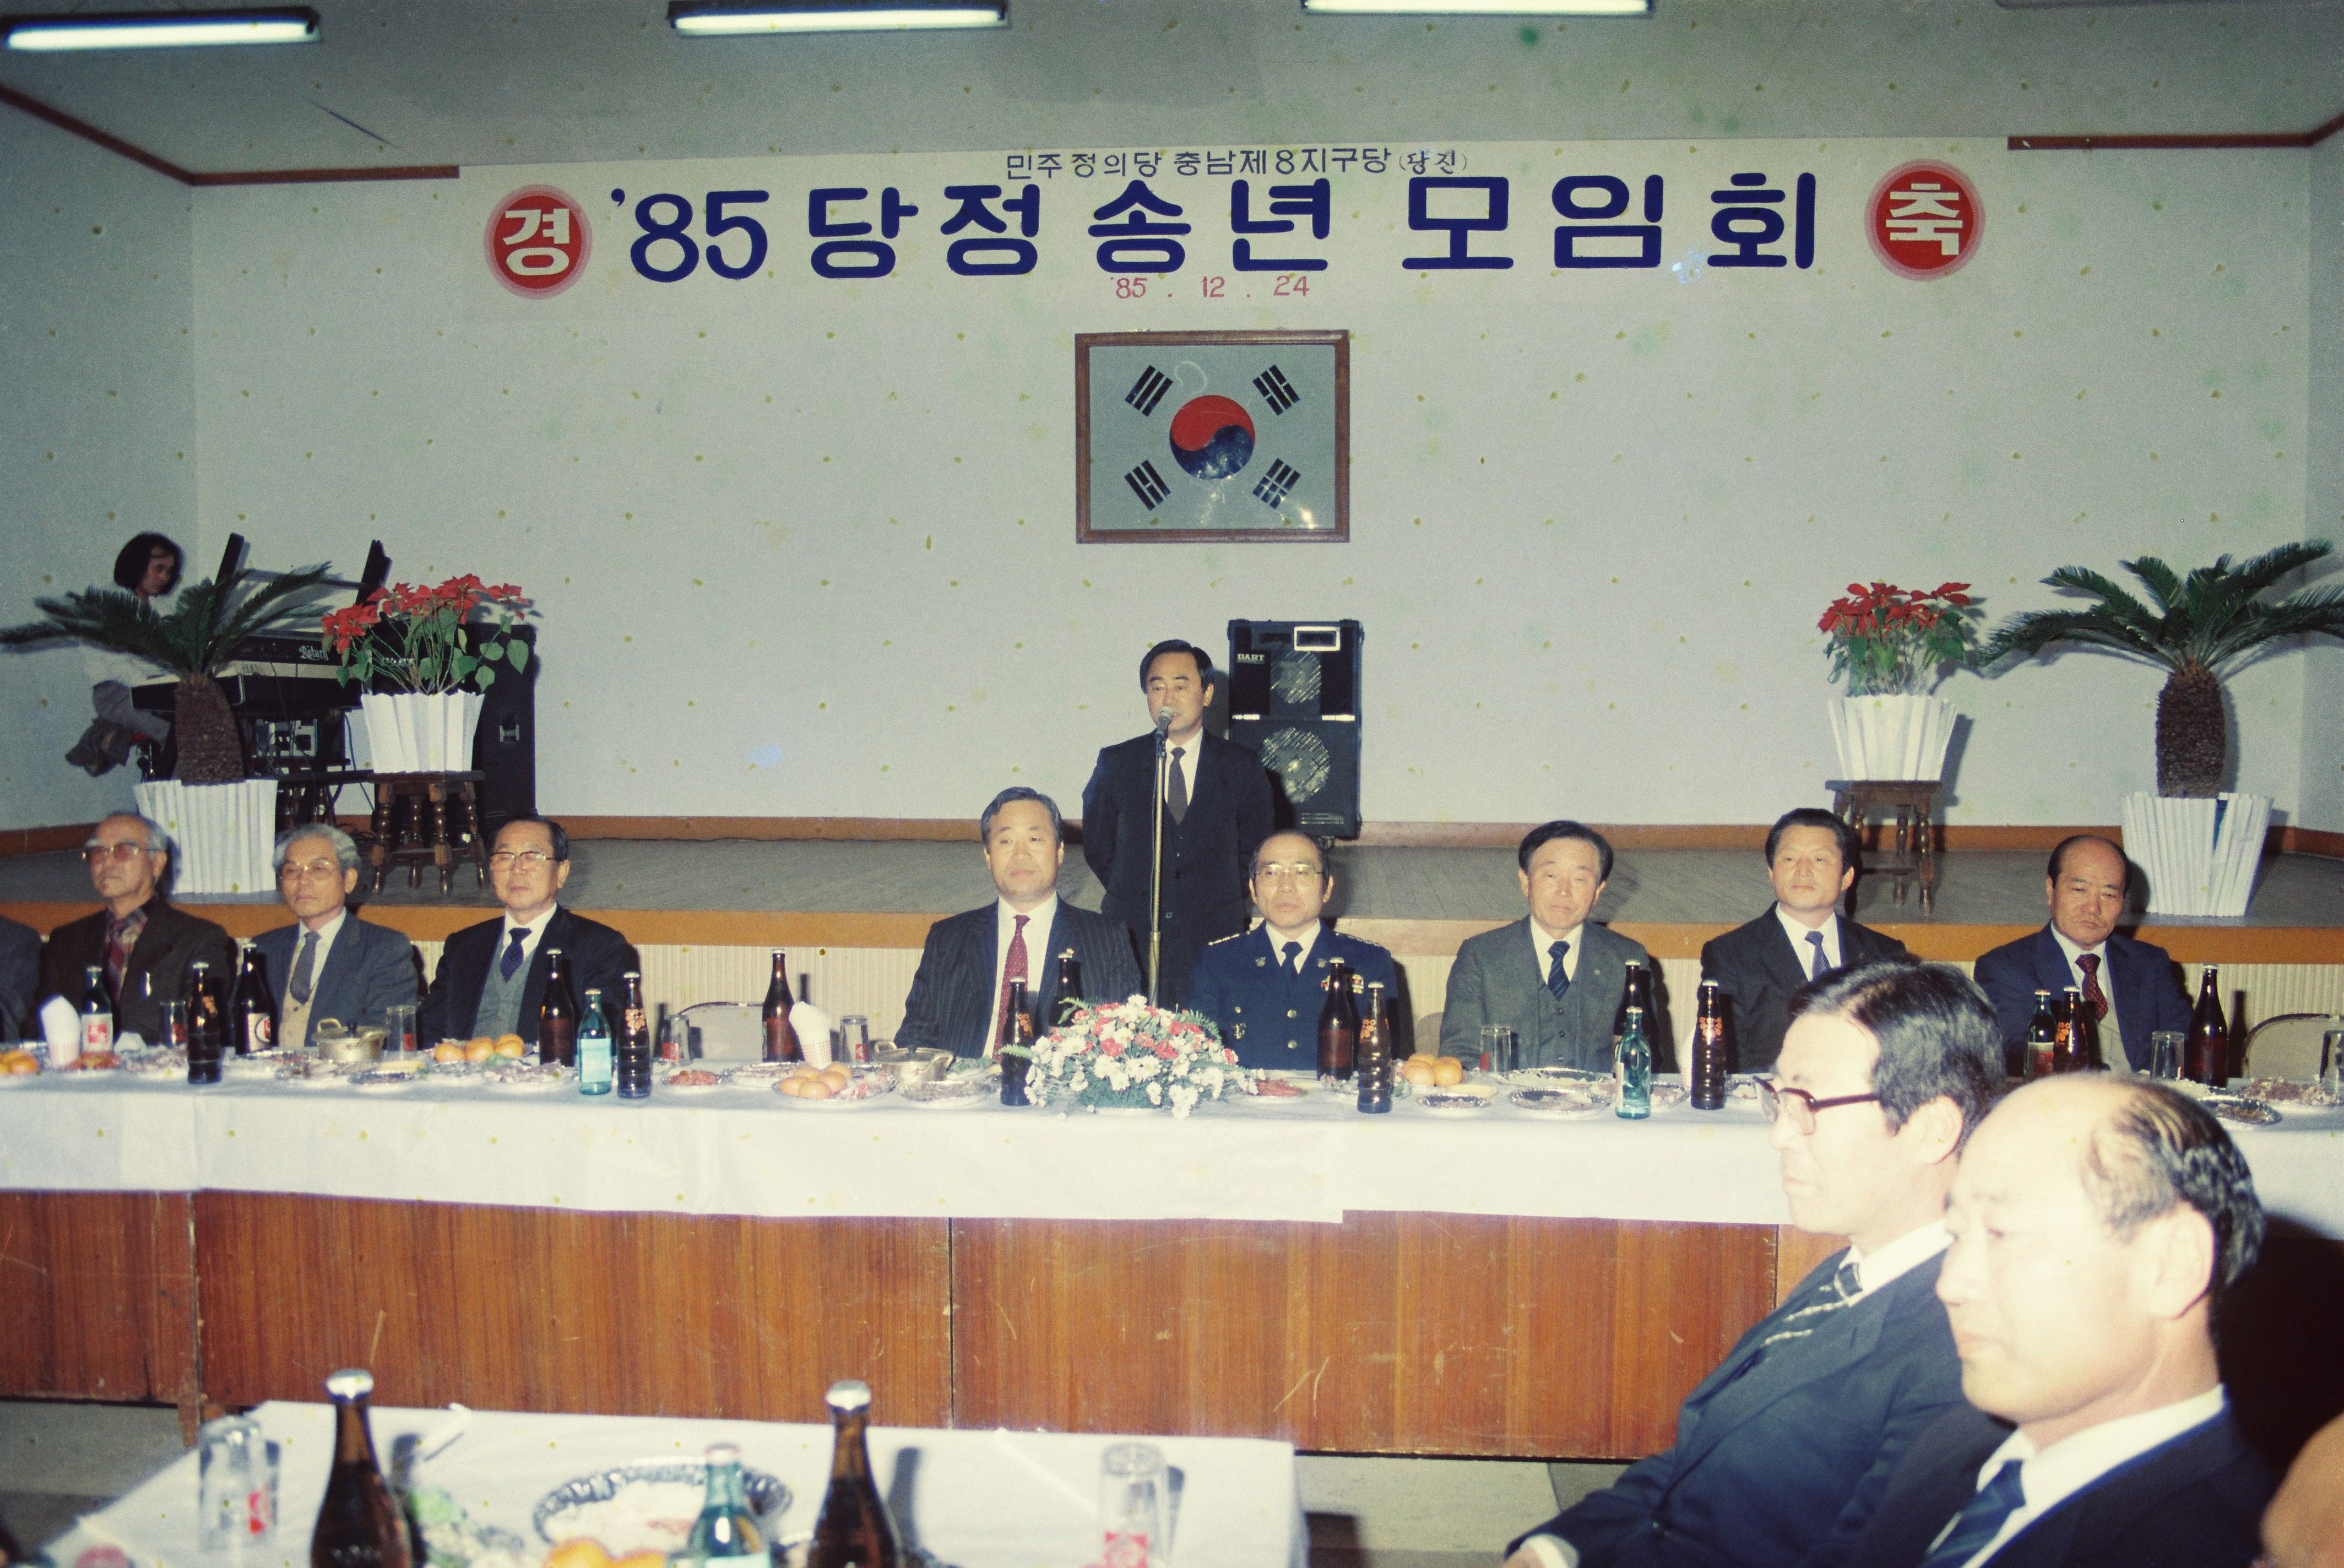 사진자료(1980년대)/1985/`85 당정 송년 모임회 0/